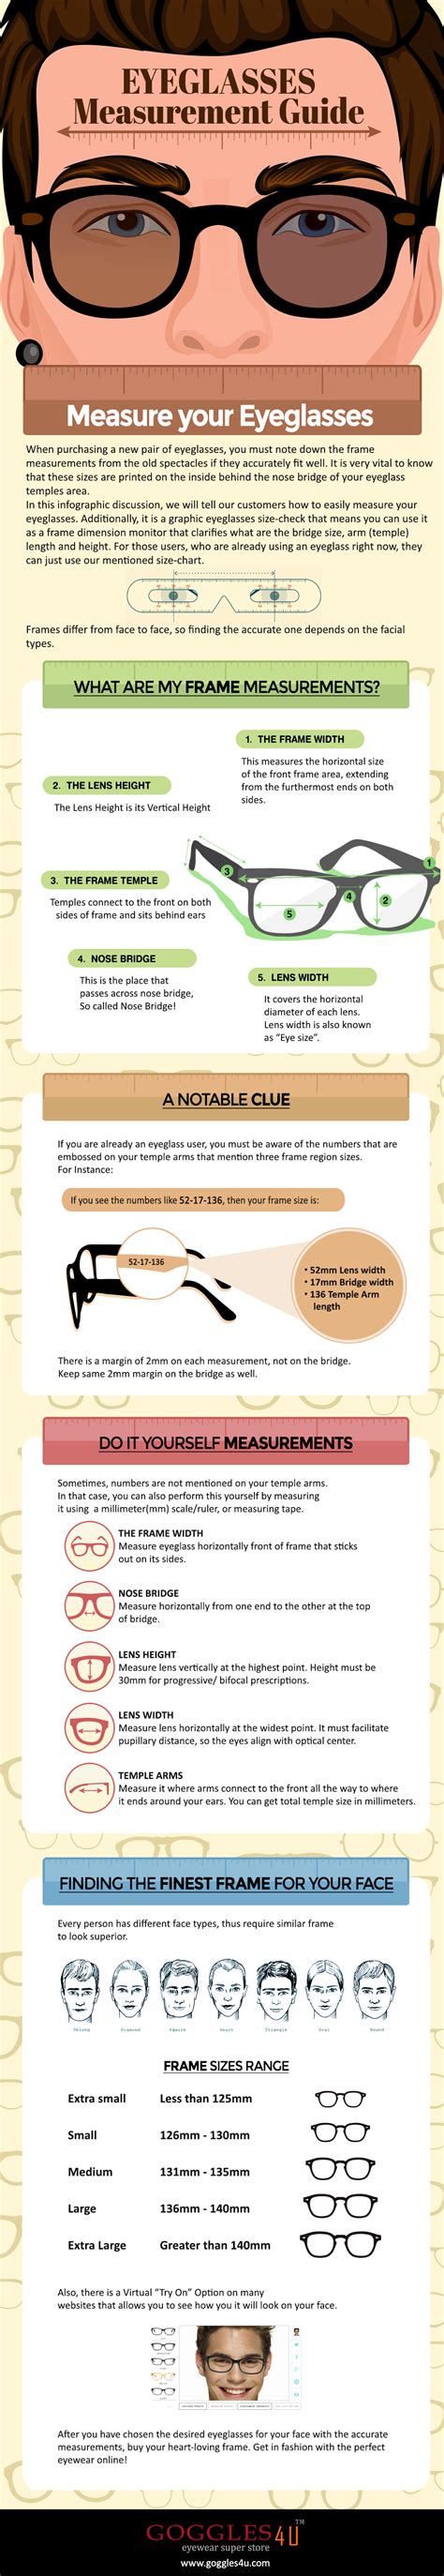 eyeglasses measurement guide